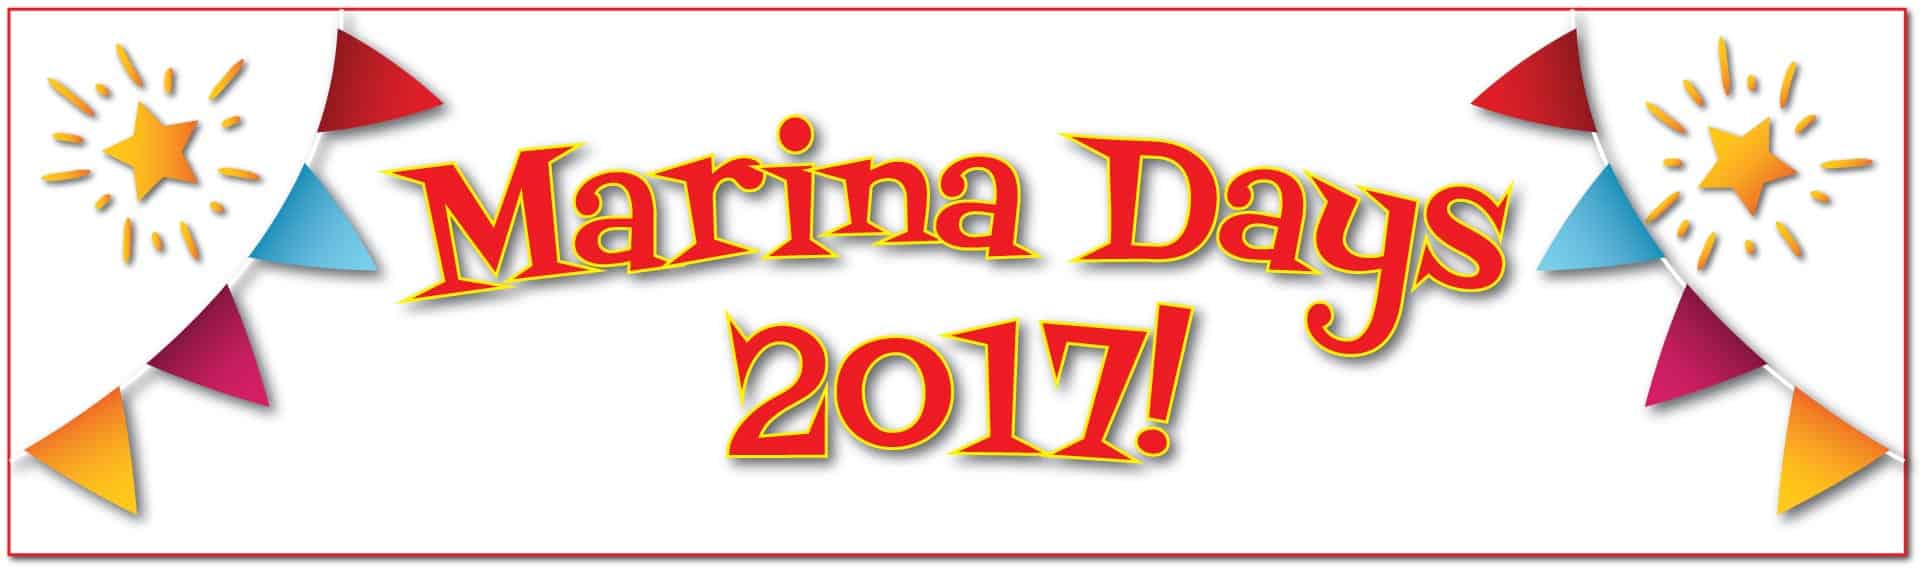 MARINA DAYS 2017 WITH CAMPBELL POINT MARINA AND MARICORP US